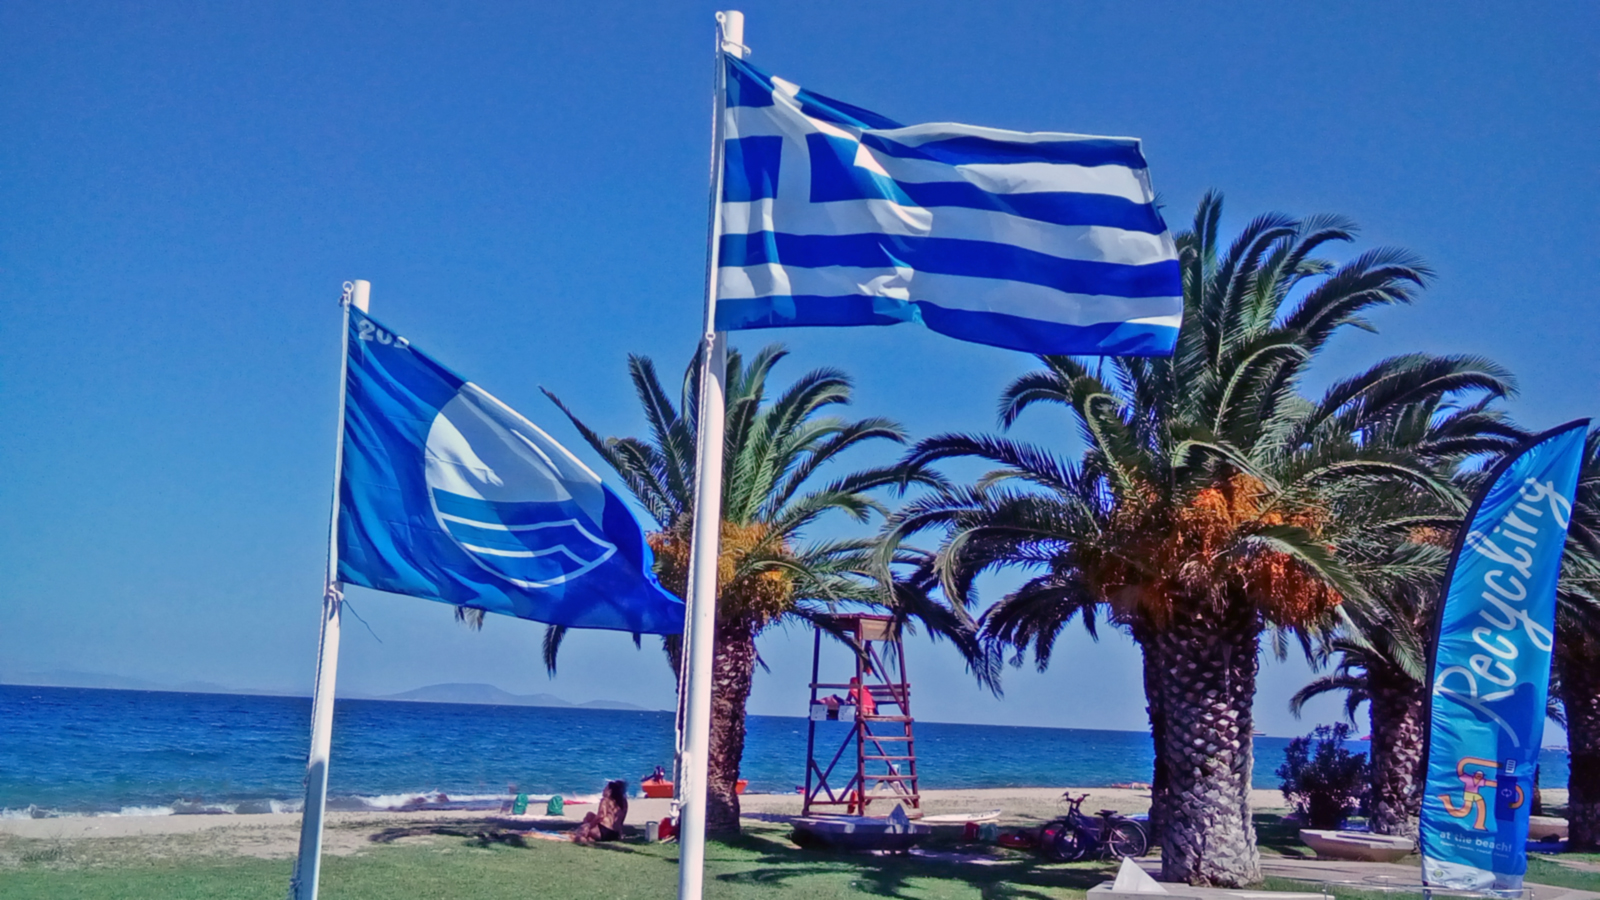 Γαλάζια σημαία: 545 ελληνικές παραλίες βραβεύτηκαν – Δείτε ποιες